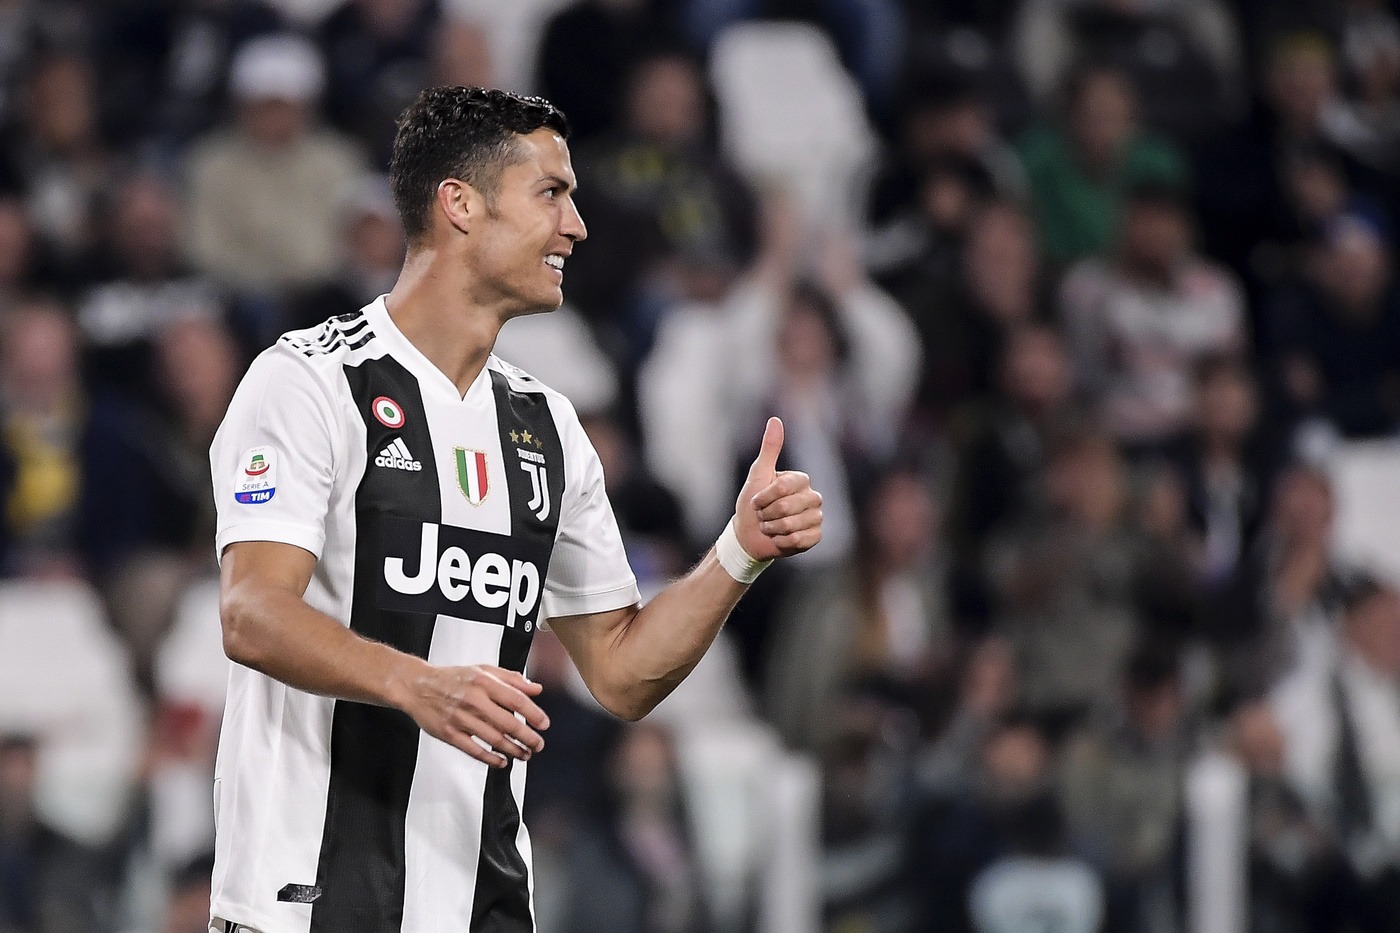 Serie A, Juventus-Genoa sabato 20 ottobre: analisi e pronostico della nona giornata del campionato italiano